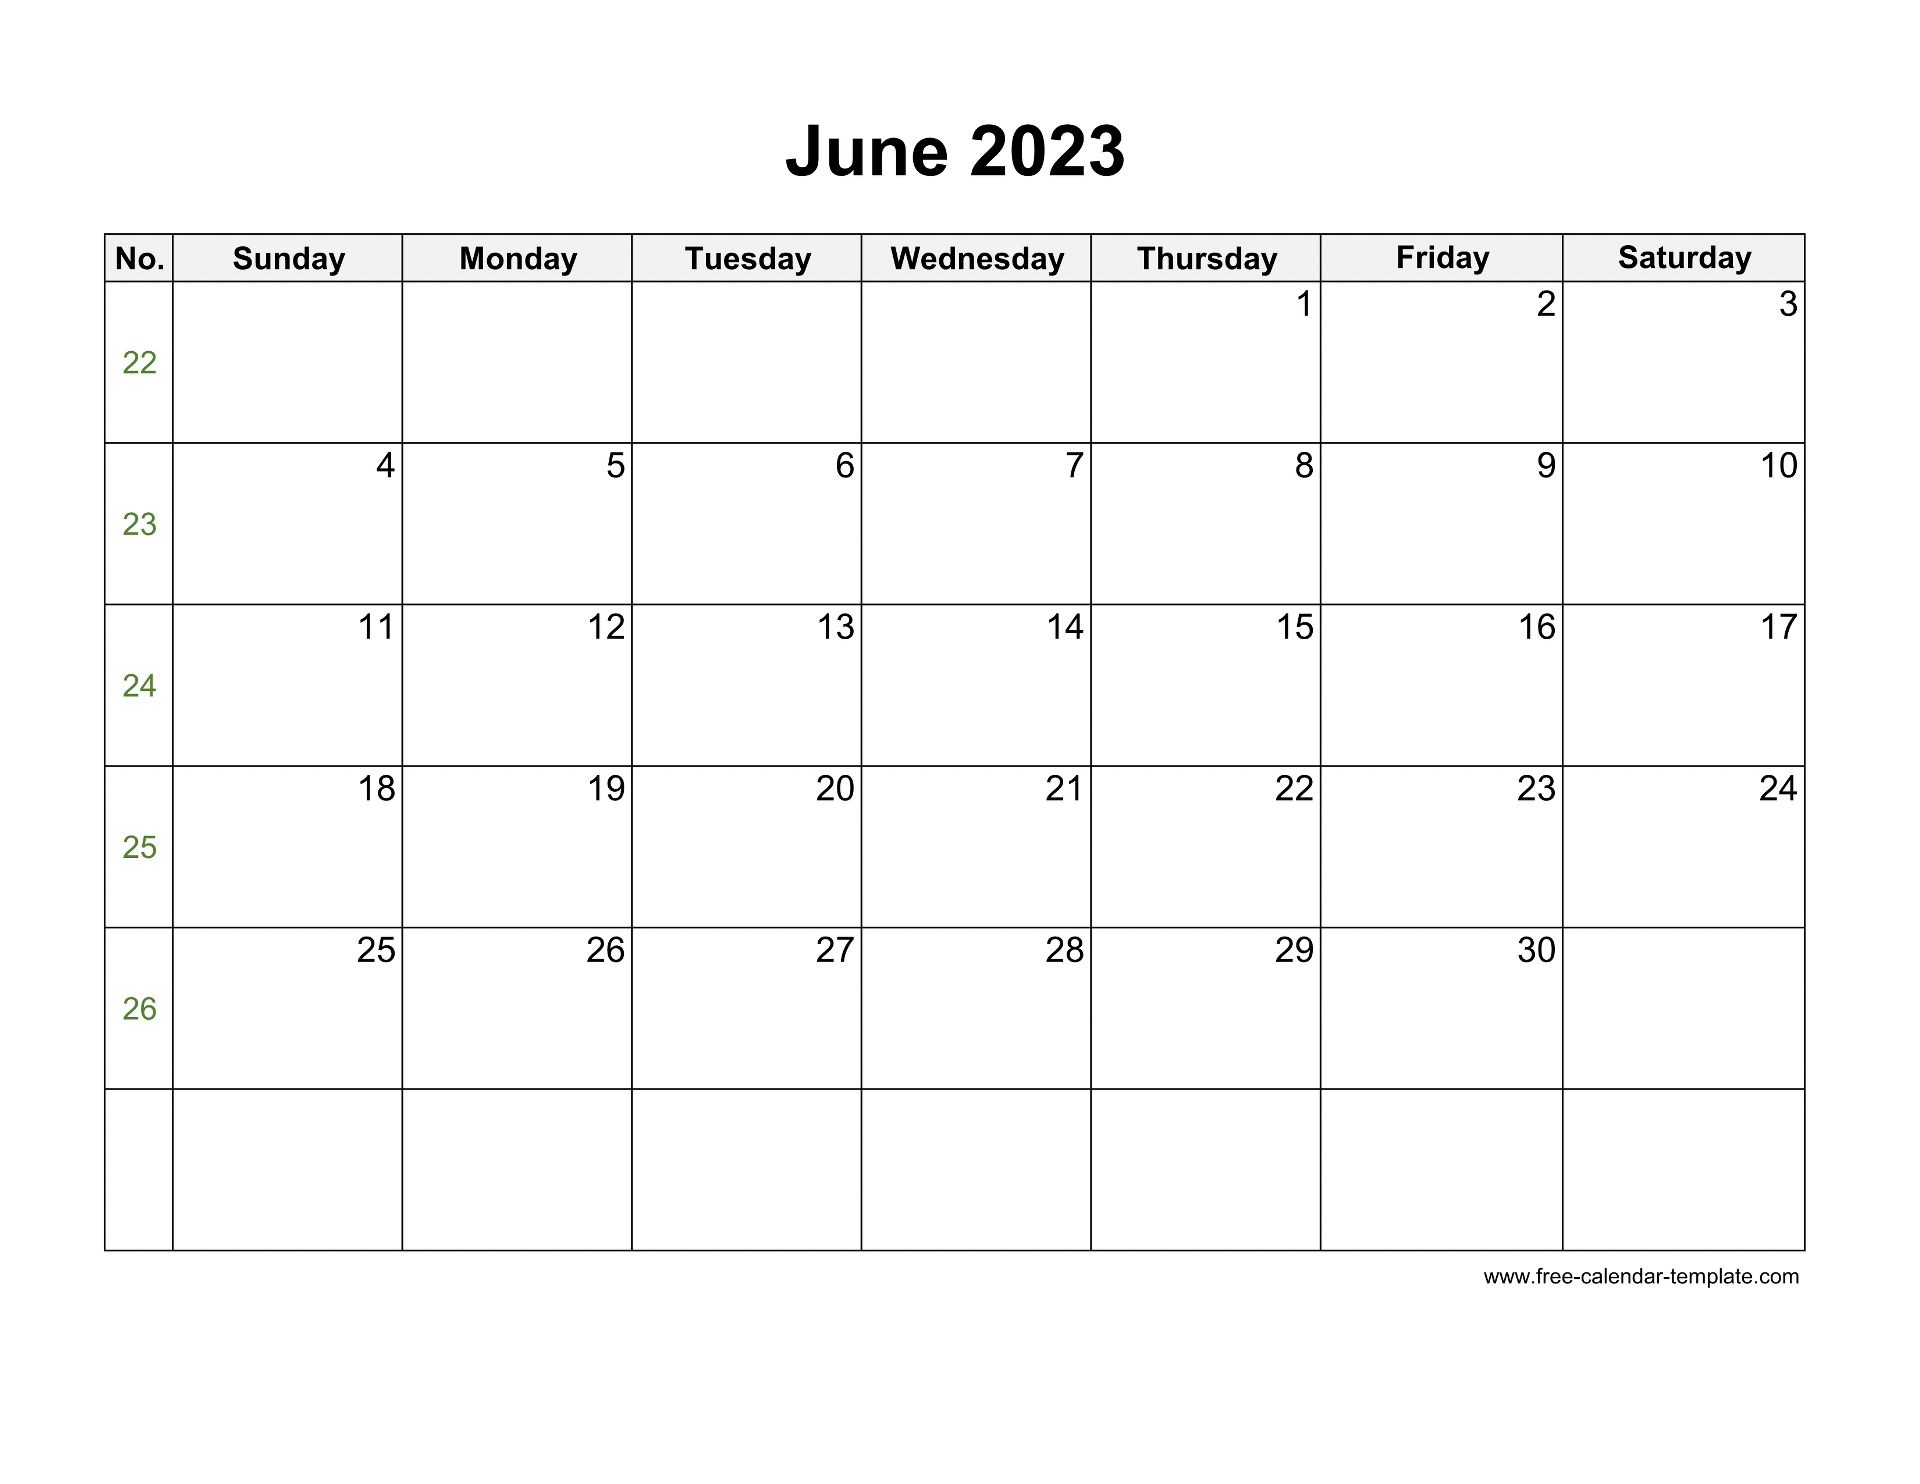 june-2023-free-calendar-tempplate-free-calendar-template